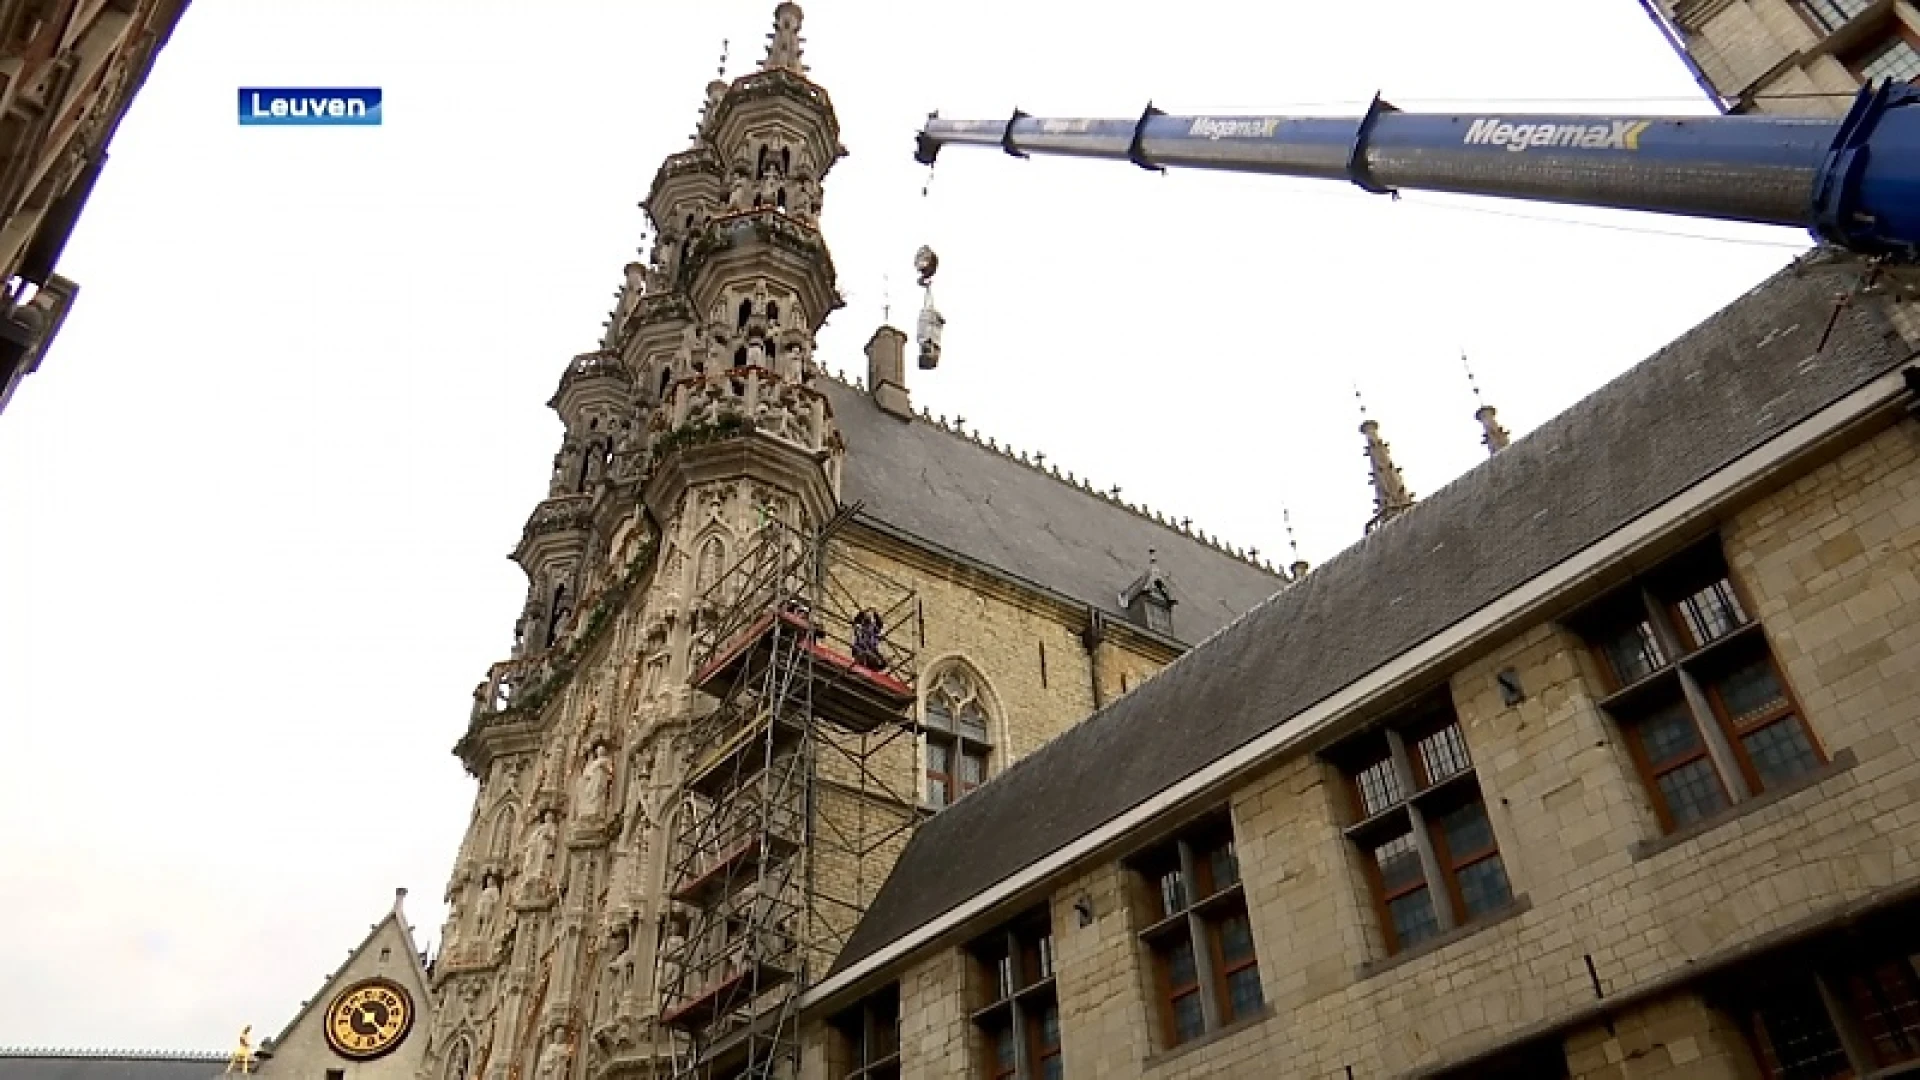 Stad Leuven laat beeld koning Leopold II verwijderen uit nis stadhuis